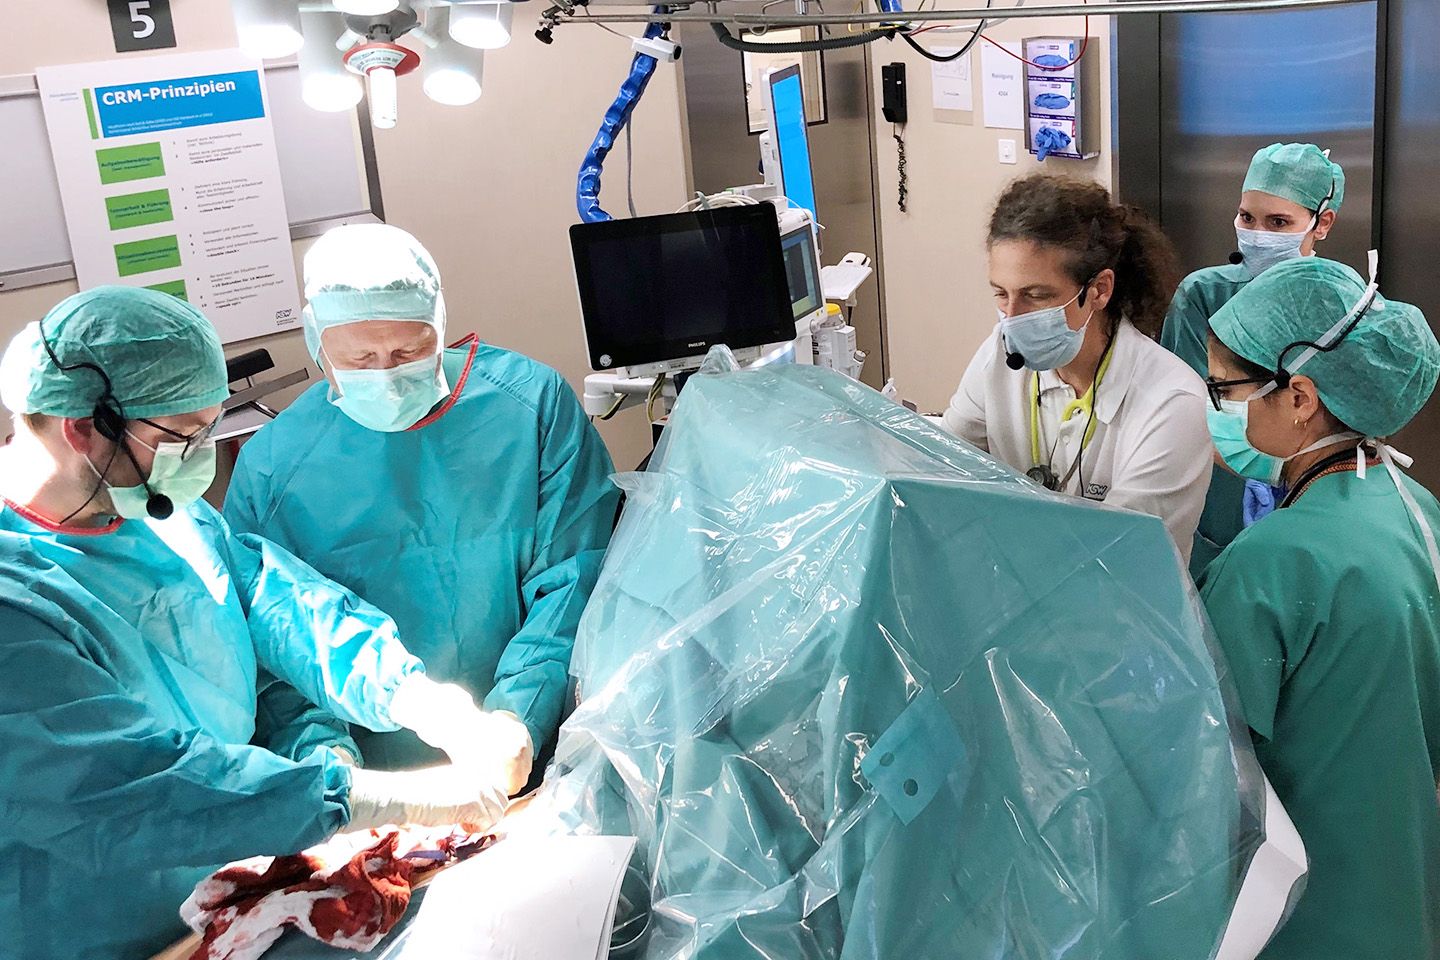 Das Ortho- und Trauma-Team simuliert eine Notfallsituation im Operationssaal.